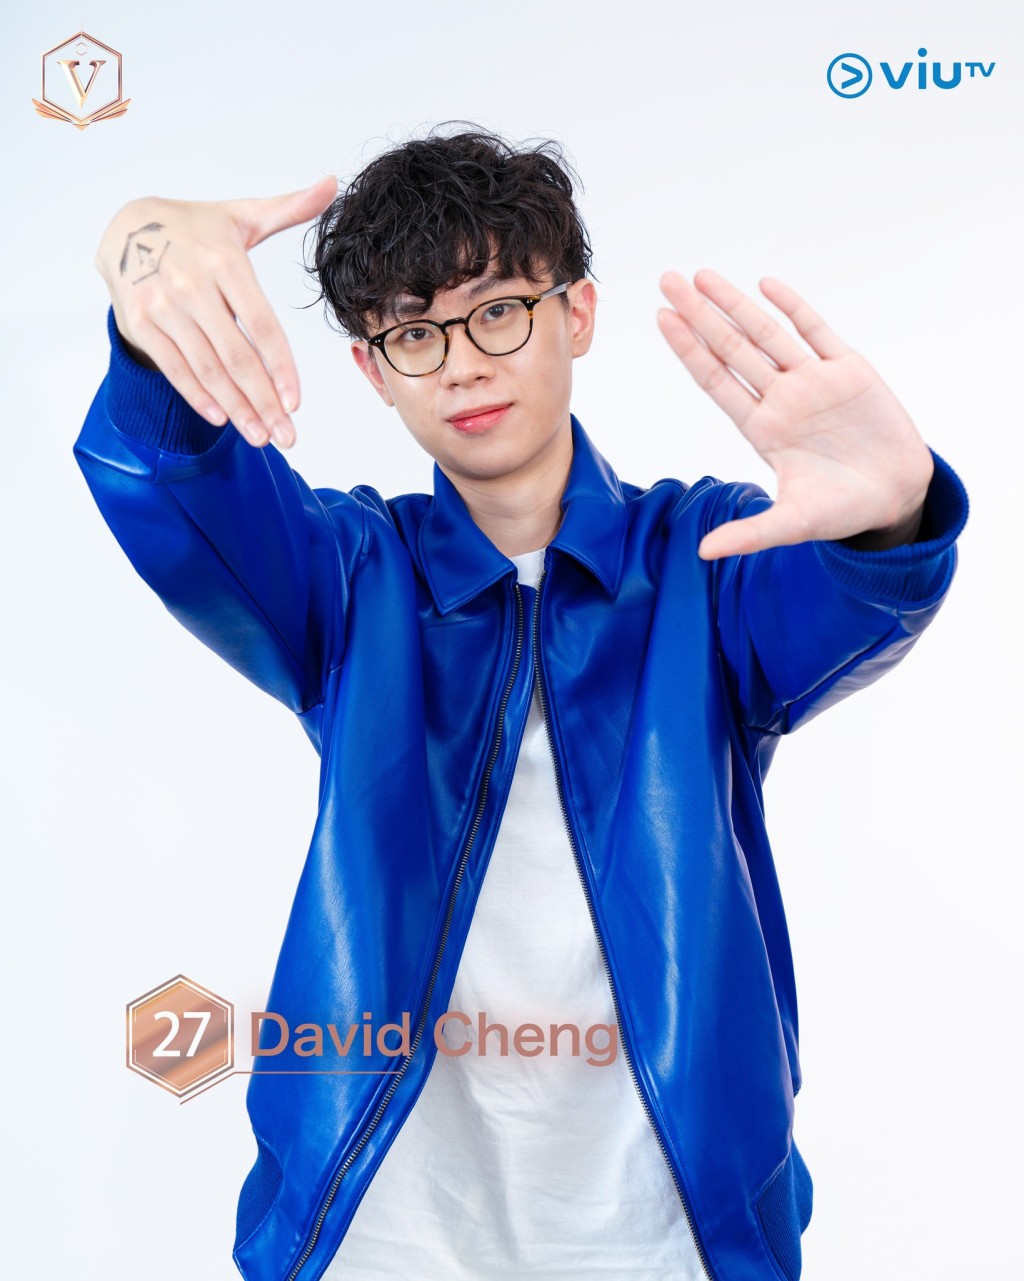 郑健庆（David Cheng） 年龄： 26 职业： 中医 擅长： 望闻问切、唱歌 IG：davidchengkh